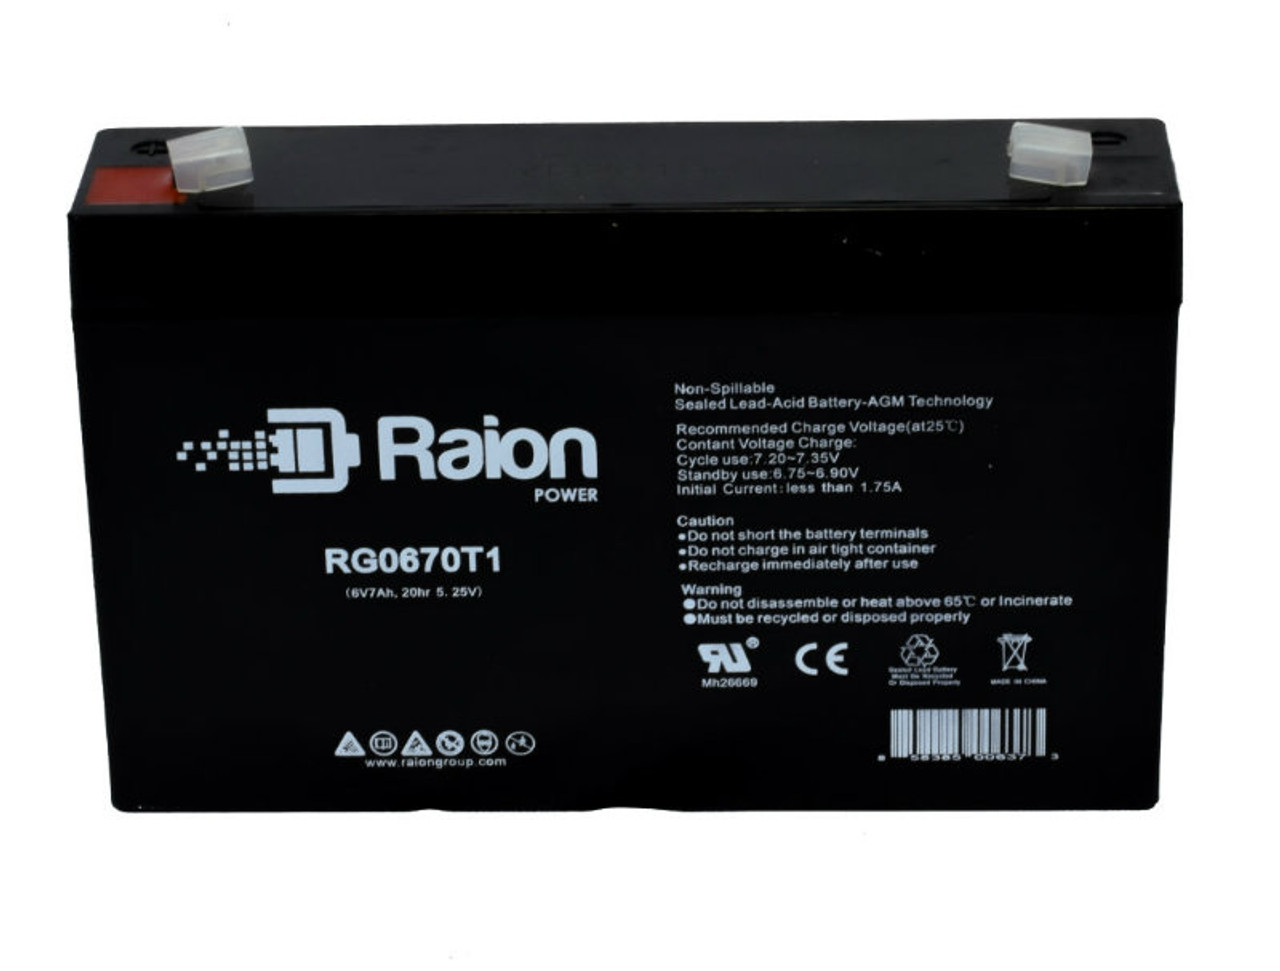 Raion Power RG0670T1 SLA Battery for Chiway SJ6V8Ah OEM Battery